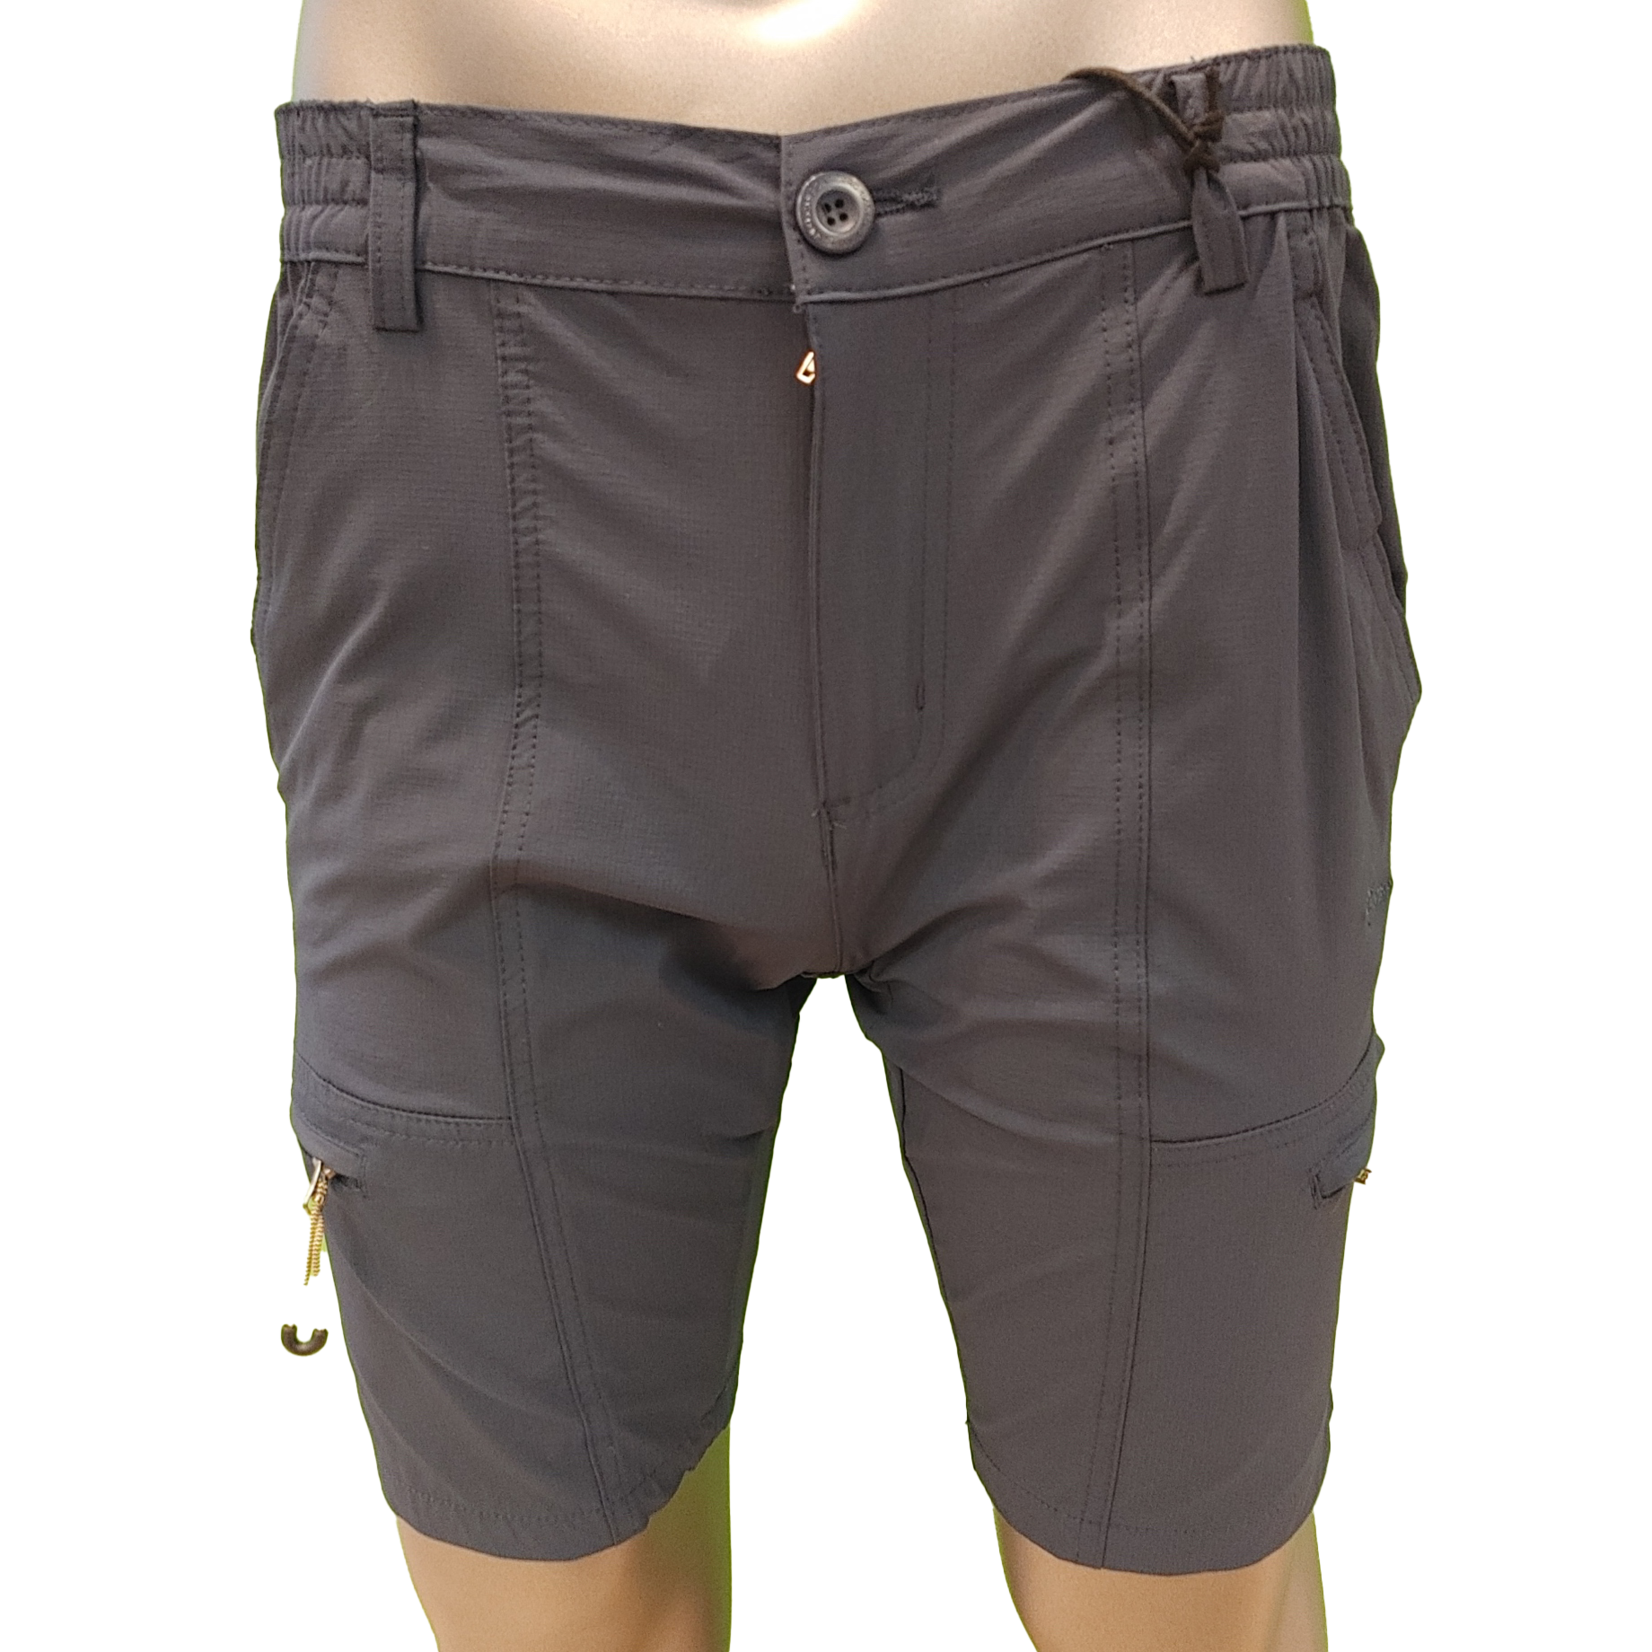 Point Zero Point Zero ripstop 4 way stretch shorts w/side zip pockets